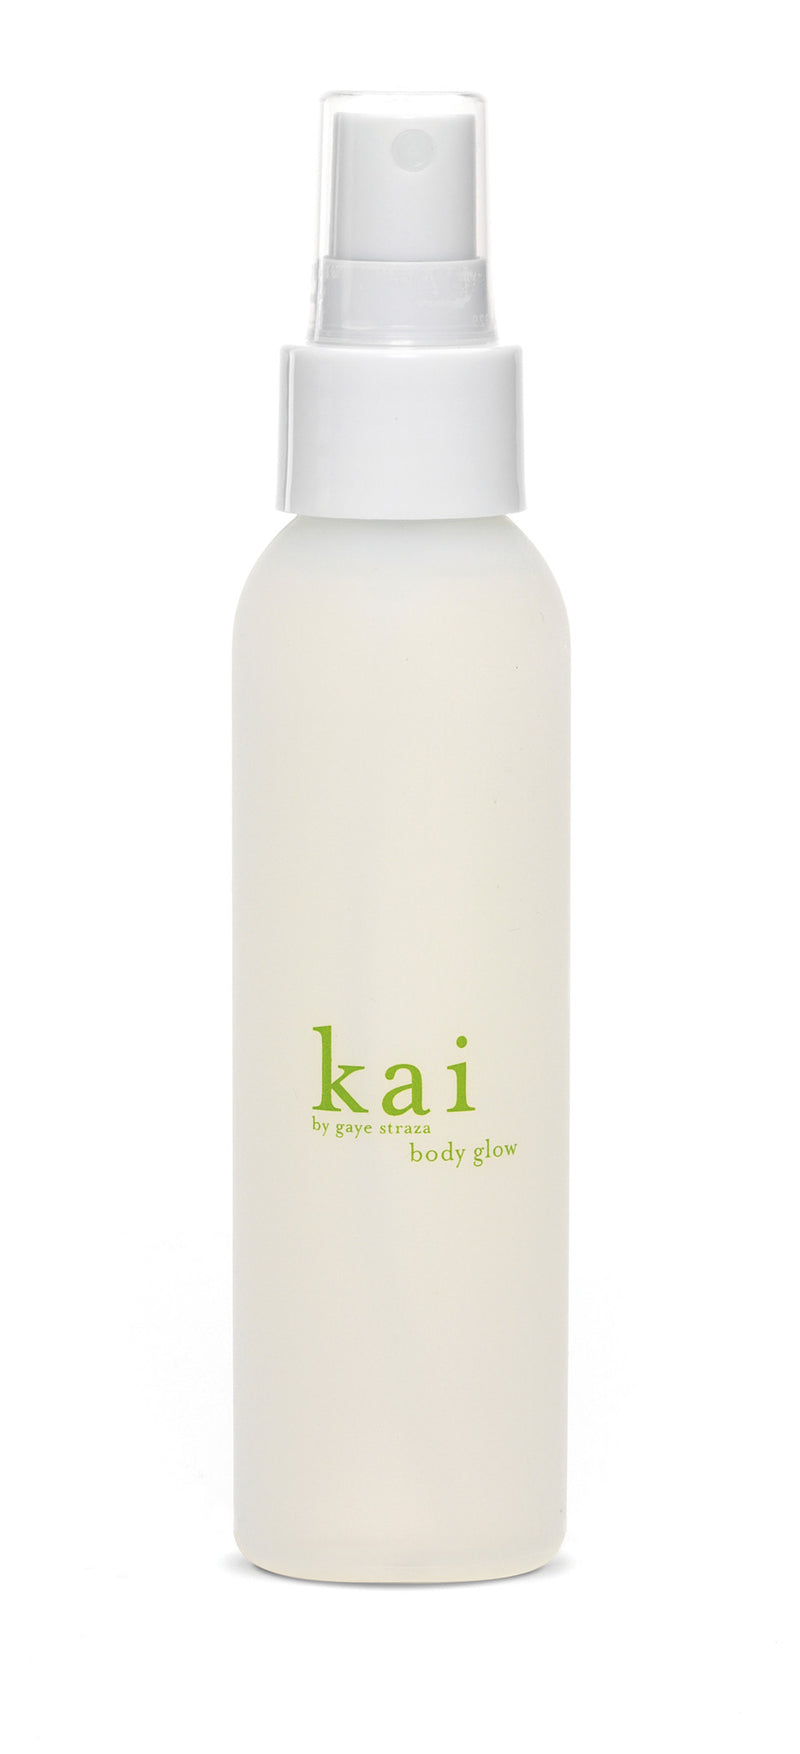 media image for kai body glow design by kai fragrance 1 233